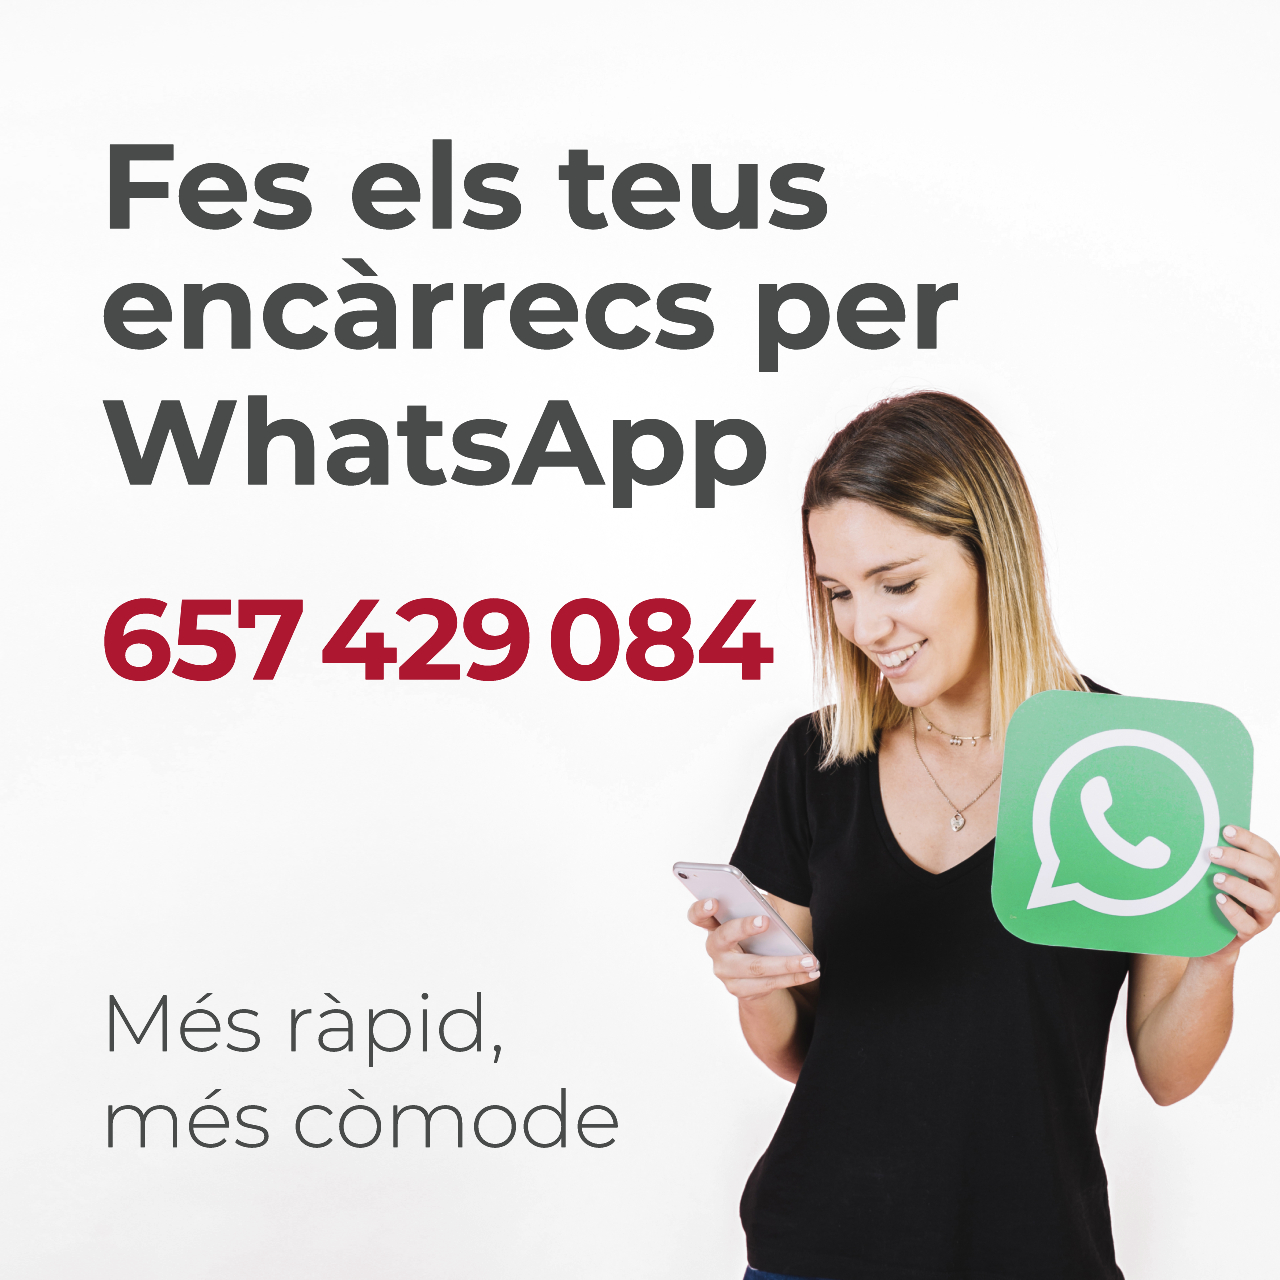 Fes els teus encàrrecs per WhatsApp al 657429084. Més ràpid, més còmode.